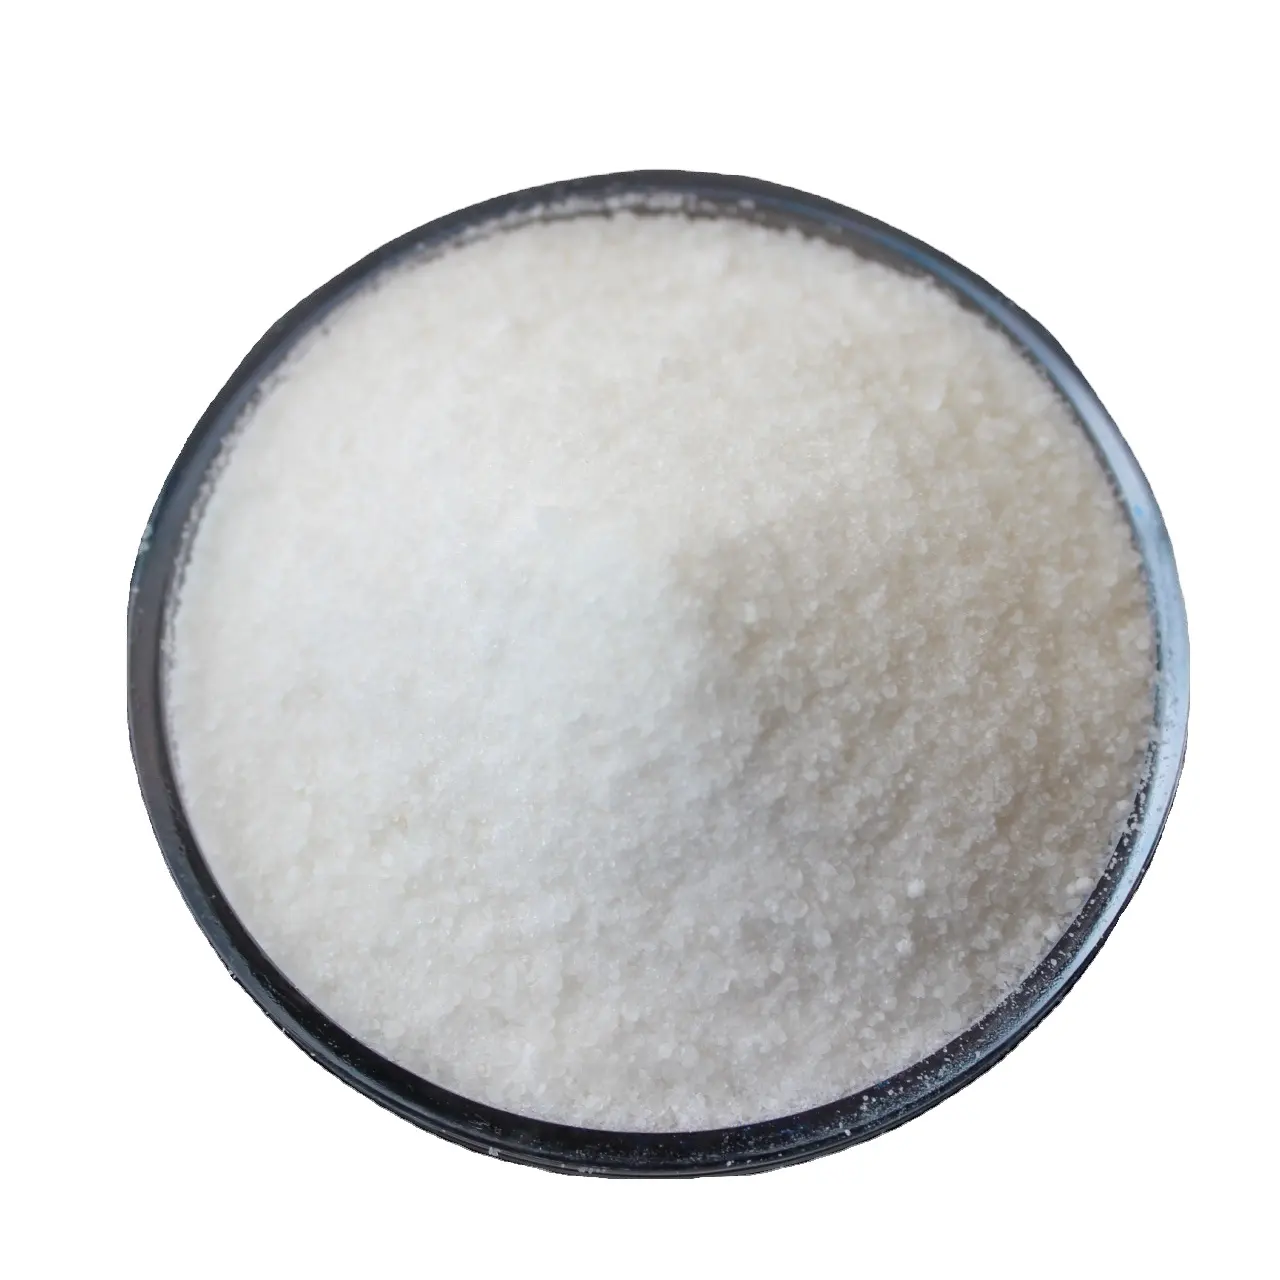 Deterjanlar için SHMP sodyum hexametaphosphate yardımcı maddeler